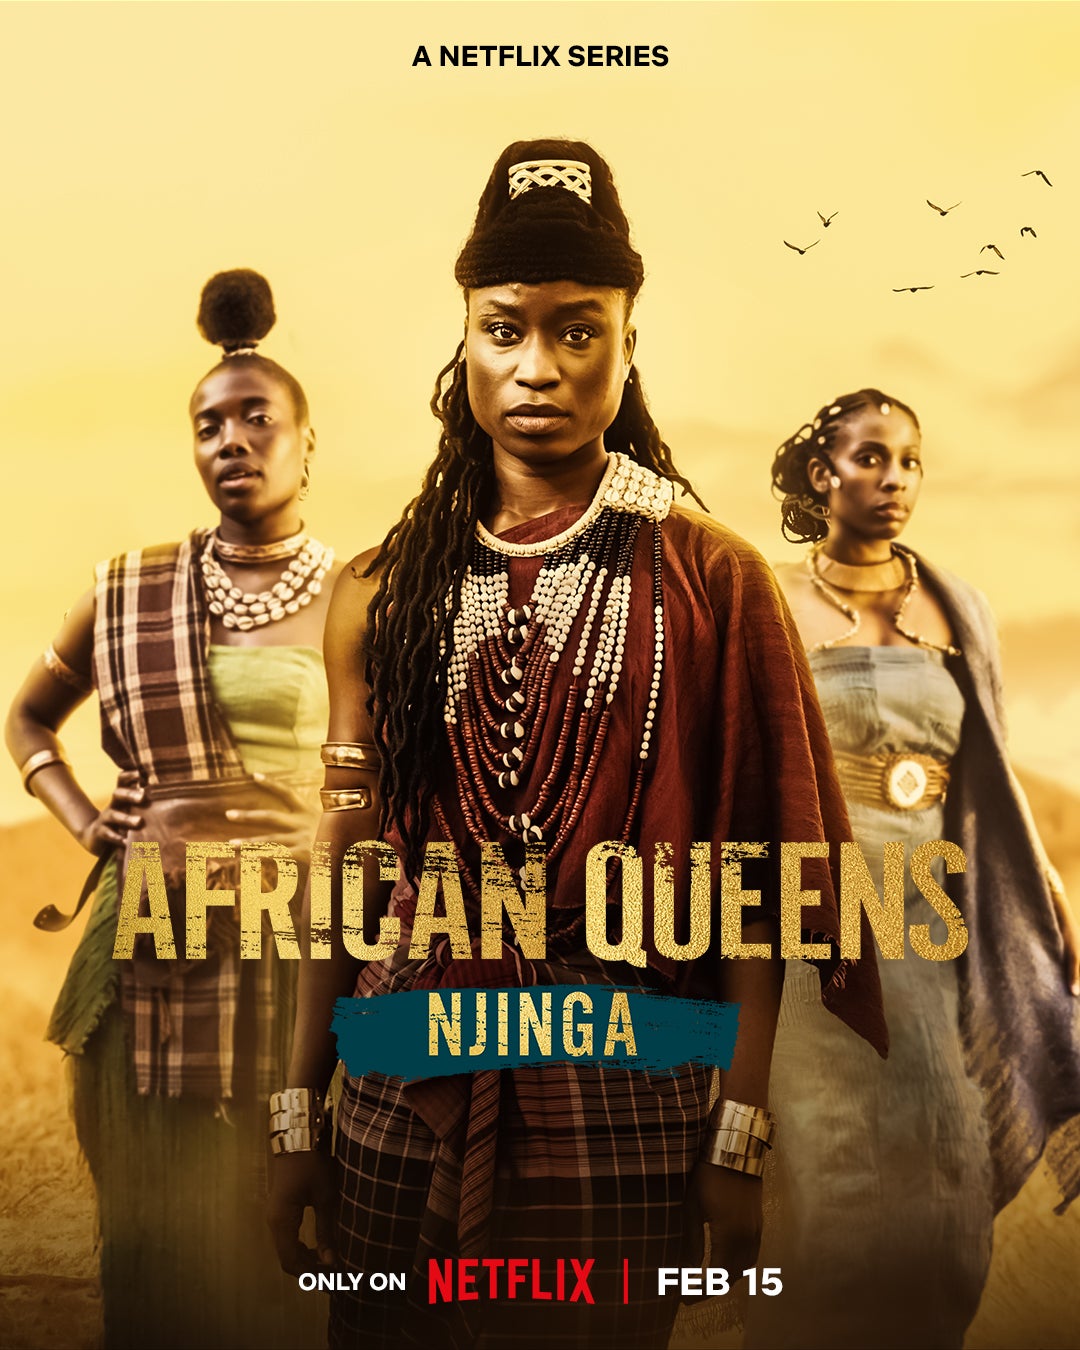 Watch: Netflix Releases Trailer For ‘African Queens: Njinga’